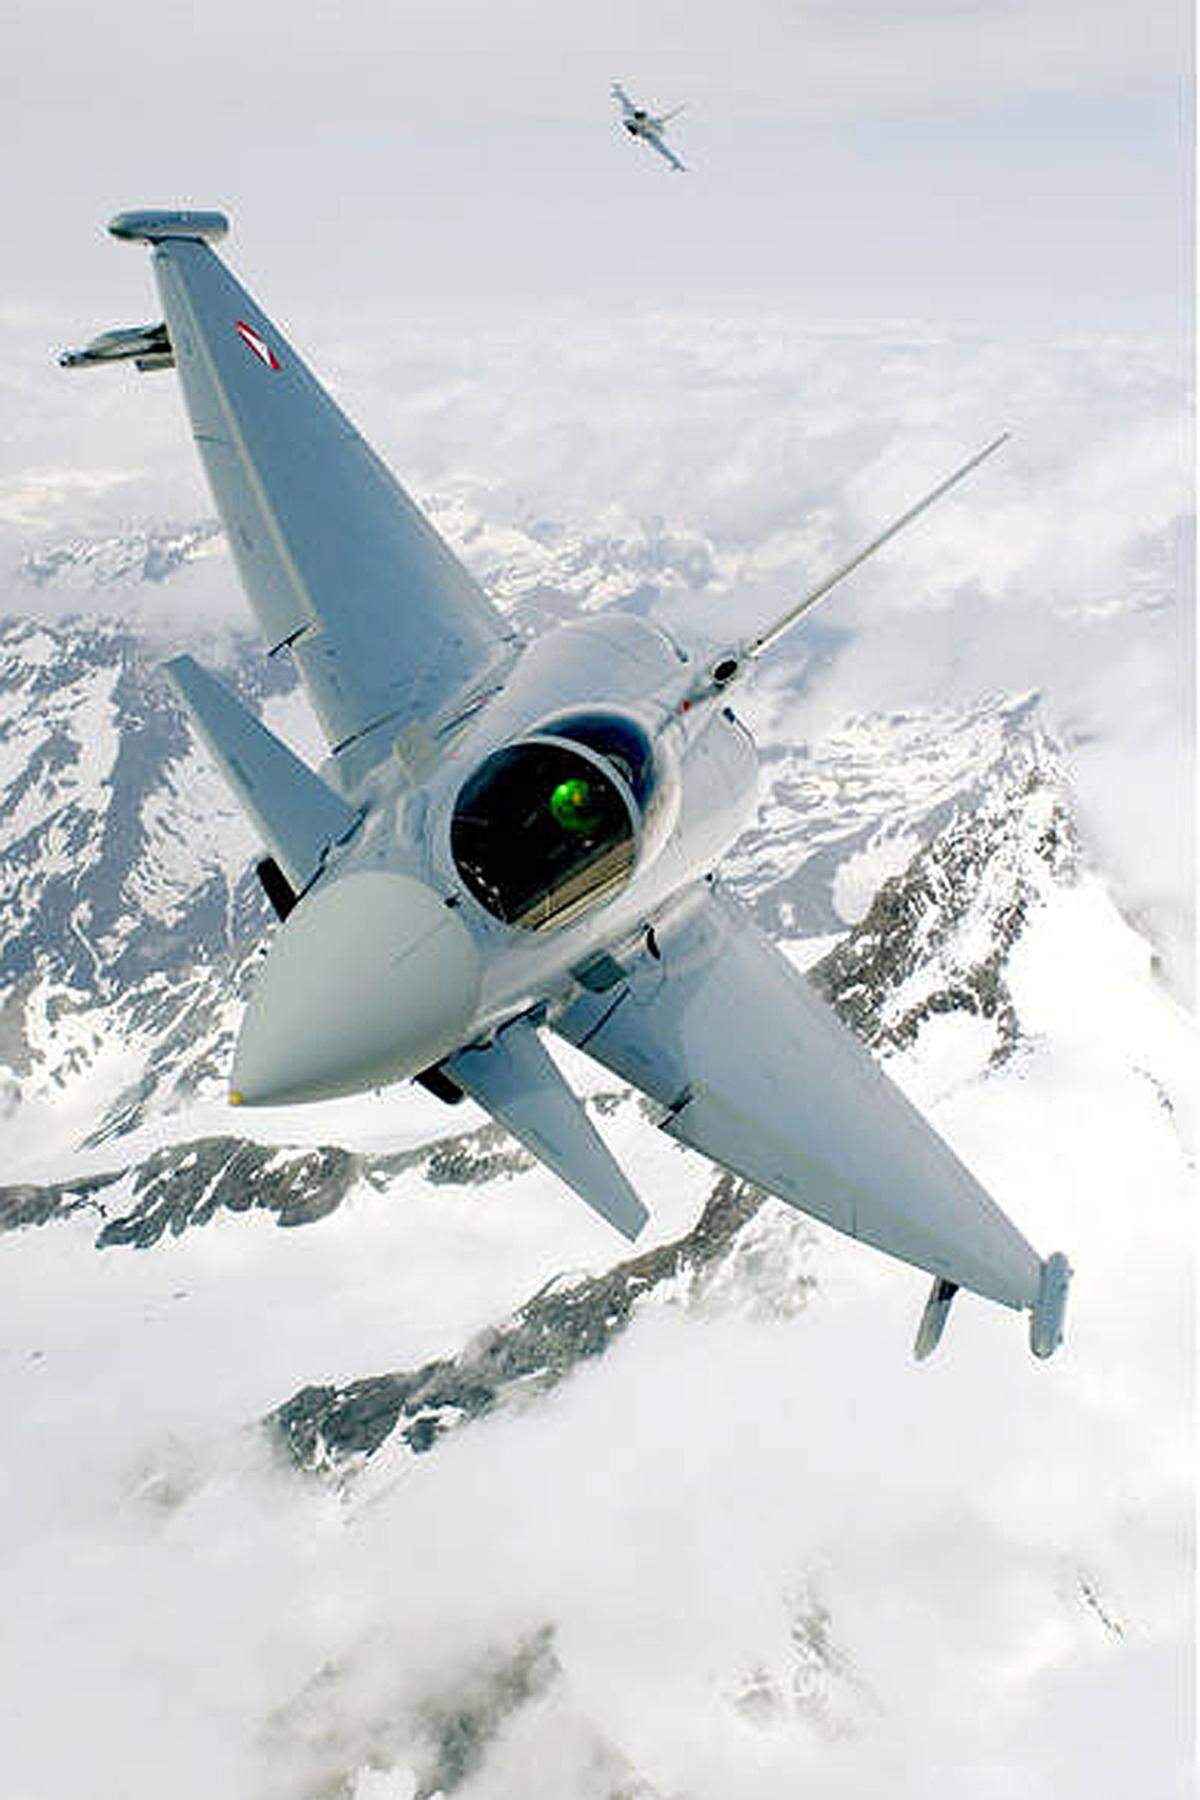 Ungeachtet der immer heftiger werdenden Debatte über die Flieger, kamen vier von ihnen von 25. bis 29. Jänner 2012 bei der Operation "Daedalus" anlässlich des World Economic Forums (WEF) im Schweizer Davos zum Einsatz.